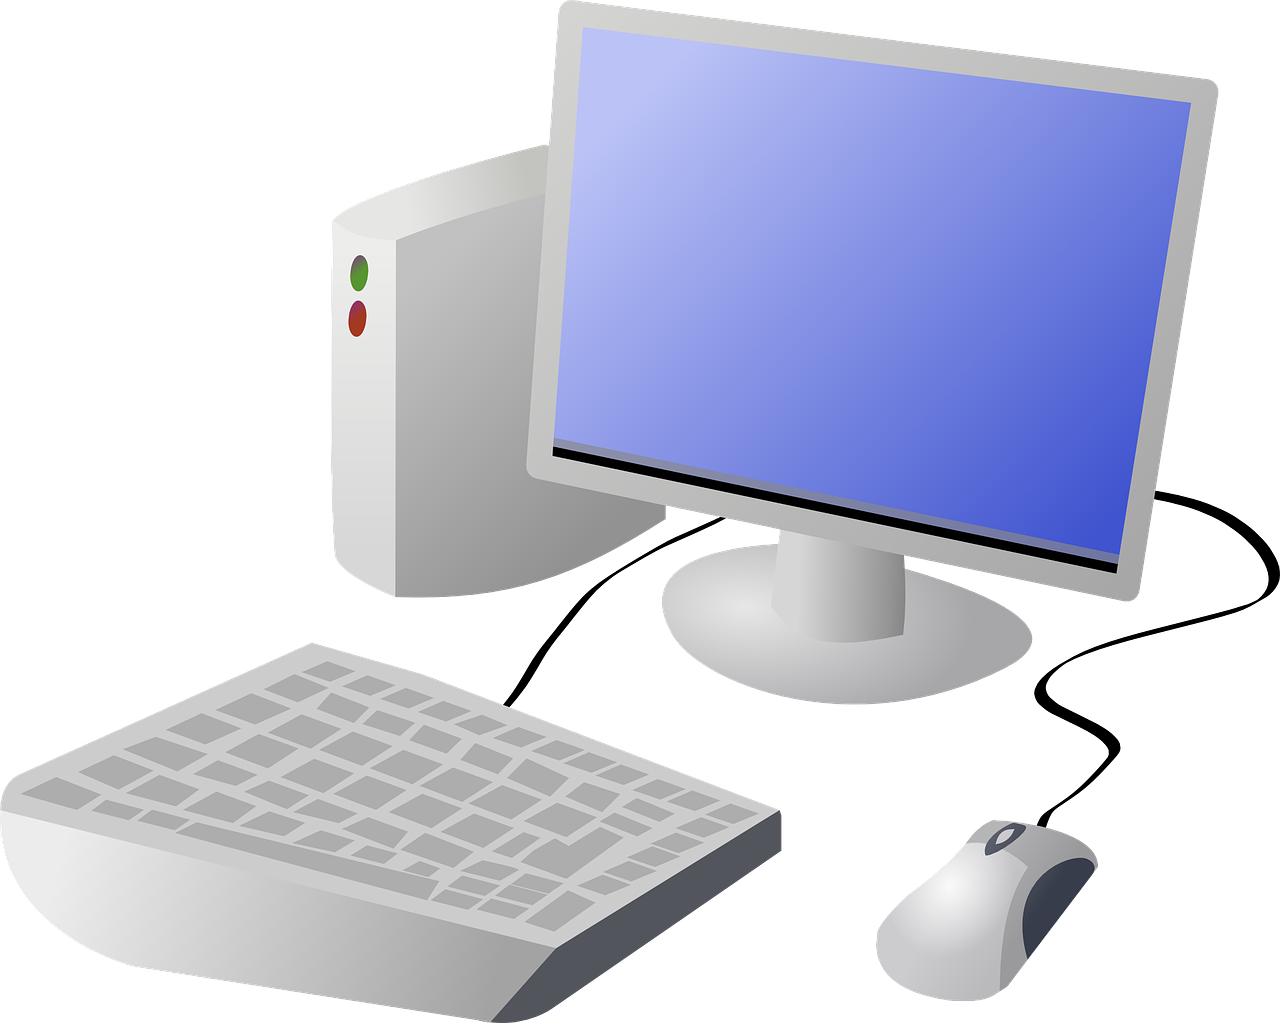 Картинка компьютера. Компьютер. Компьютер без фона. Компьютер на белом фоне. Компьютер на прозрачном фоне.